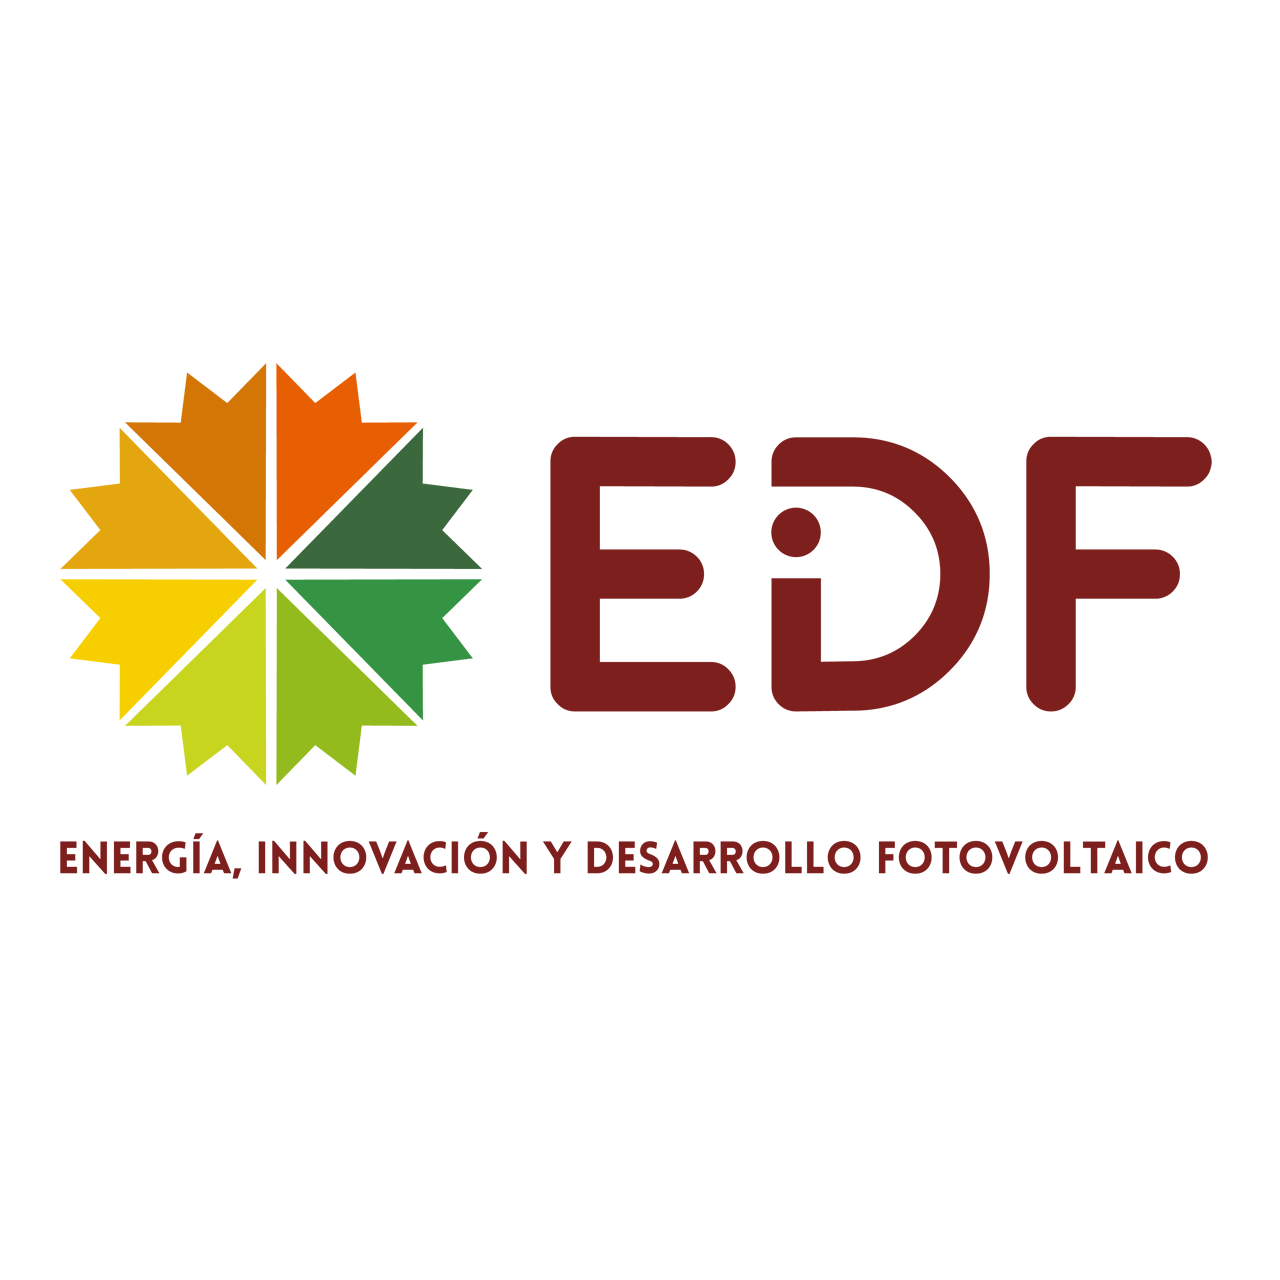 www.edfsolar.es